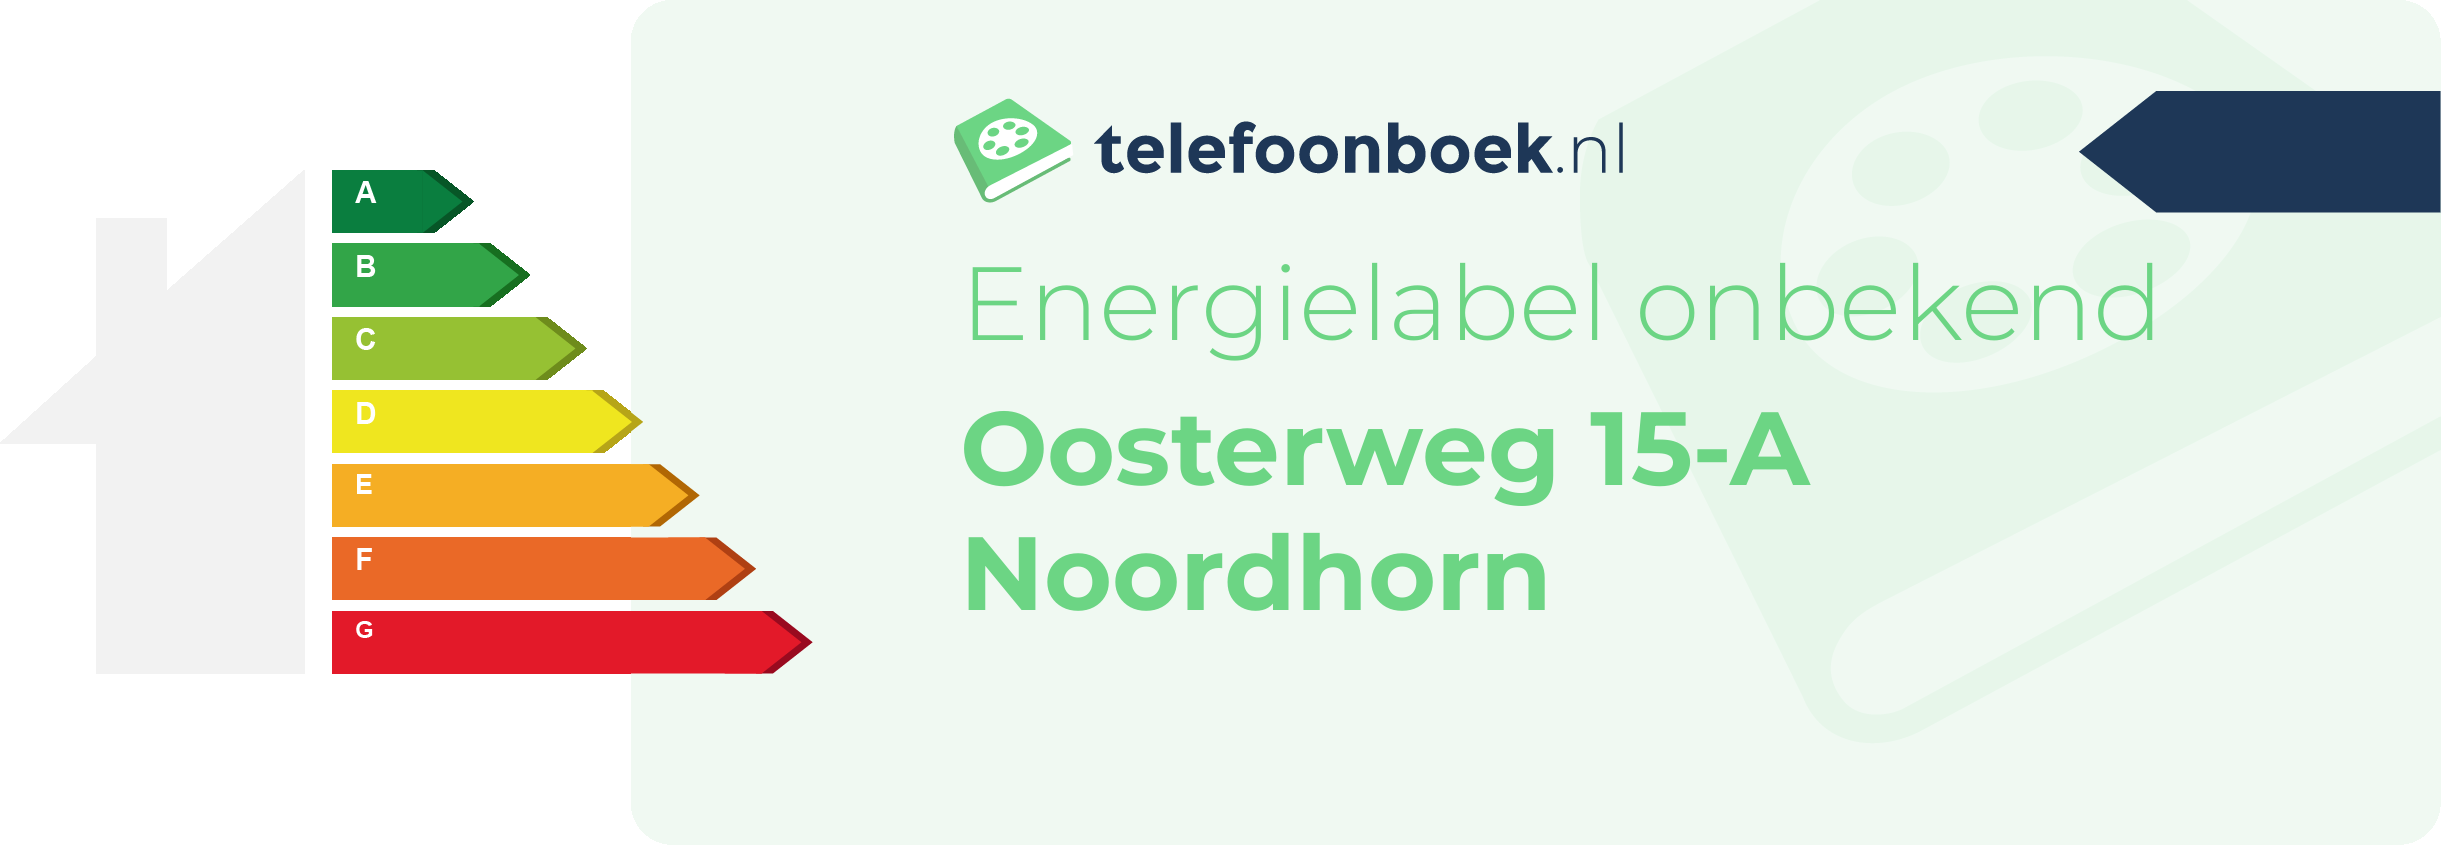 Energielabel Oosterweg 15-A Noordhorn